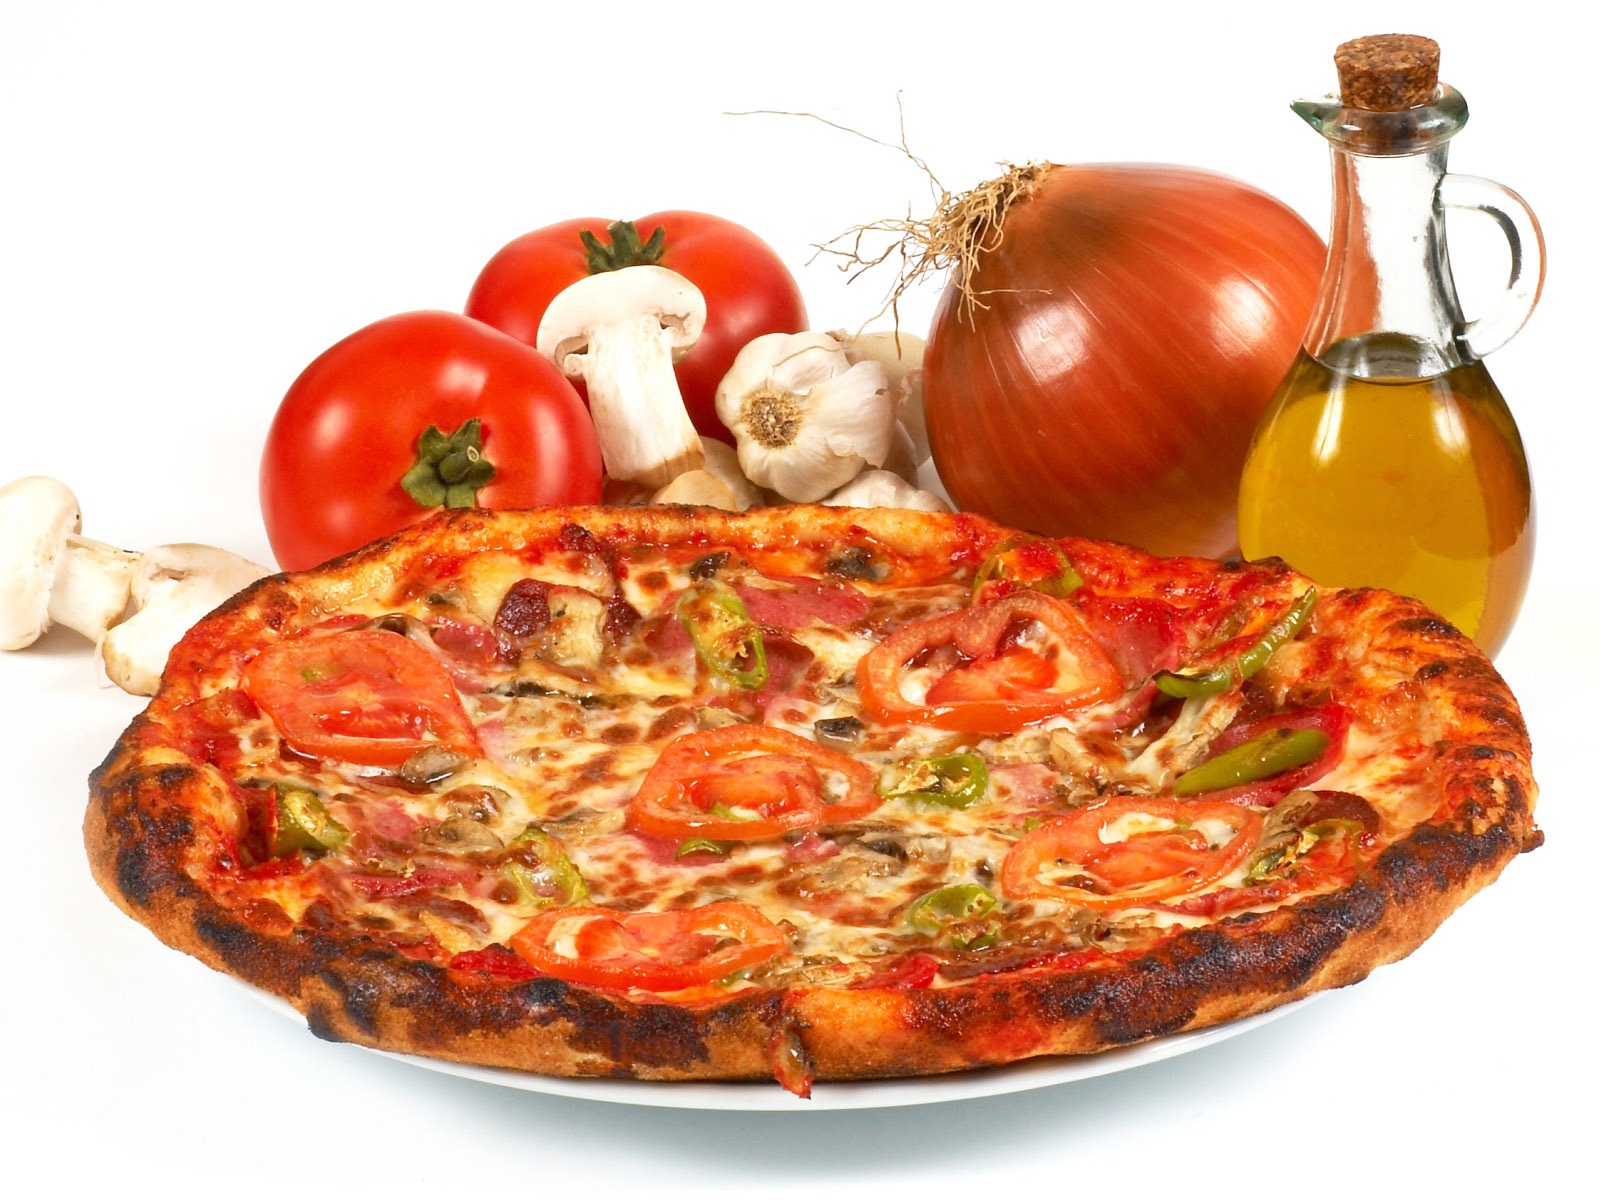 Fondos de pizzerías de Alimentos (4) #16 - 1600x1200